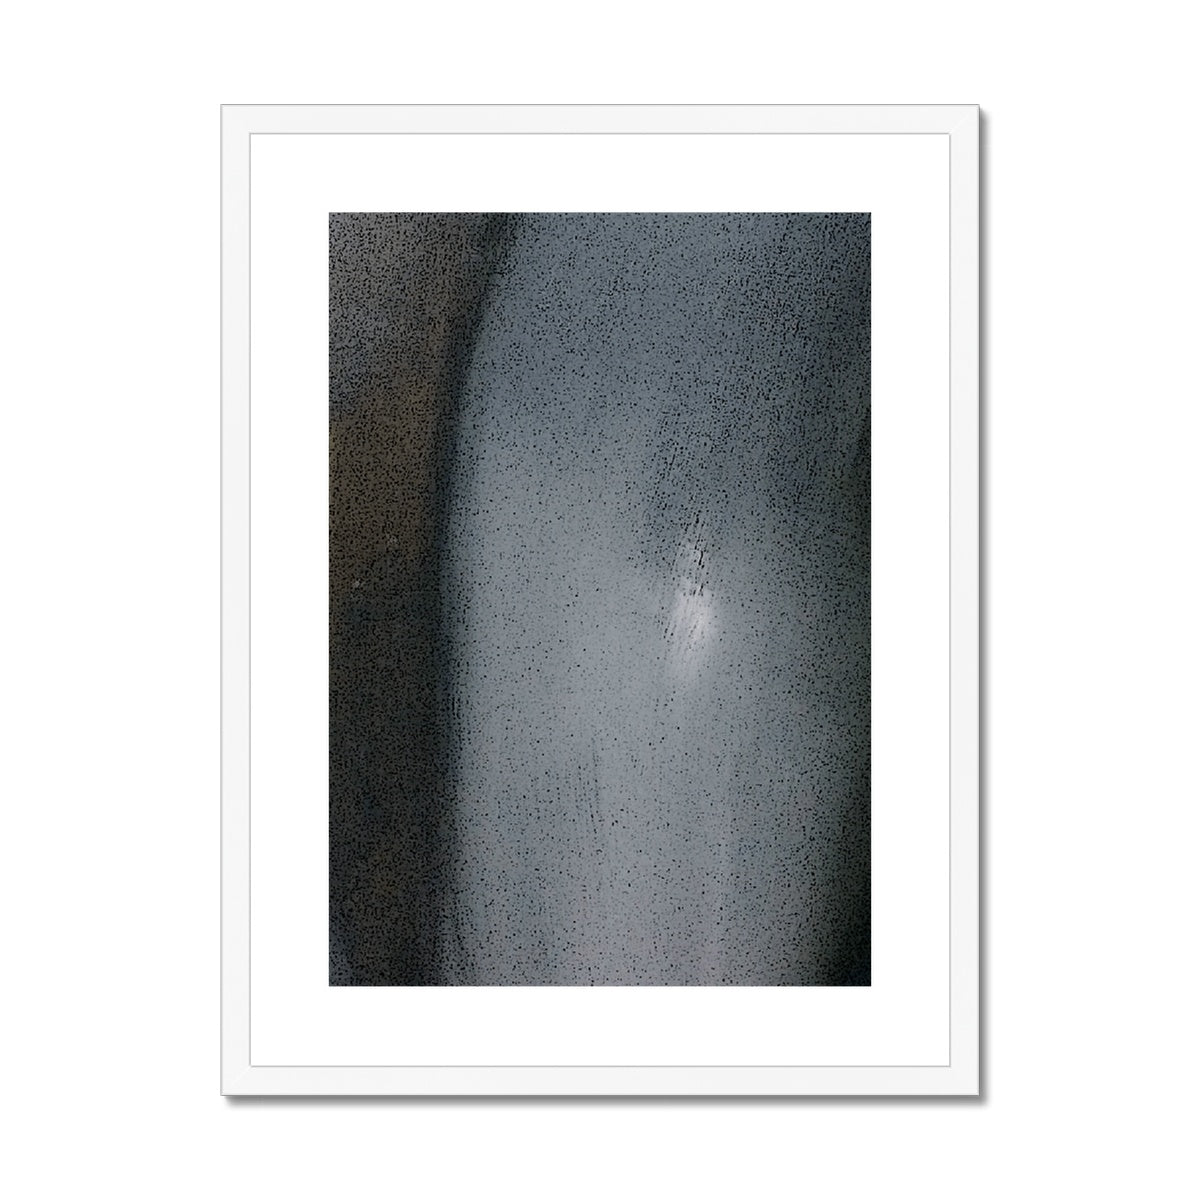 The Alien Framed & Mounted Print